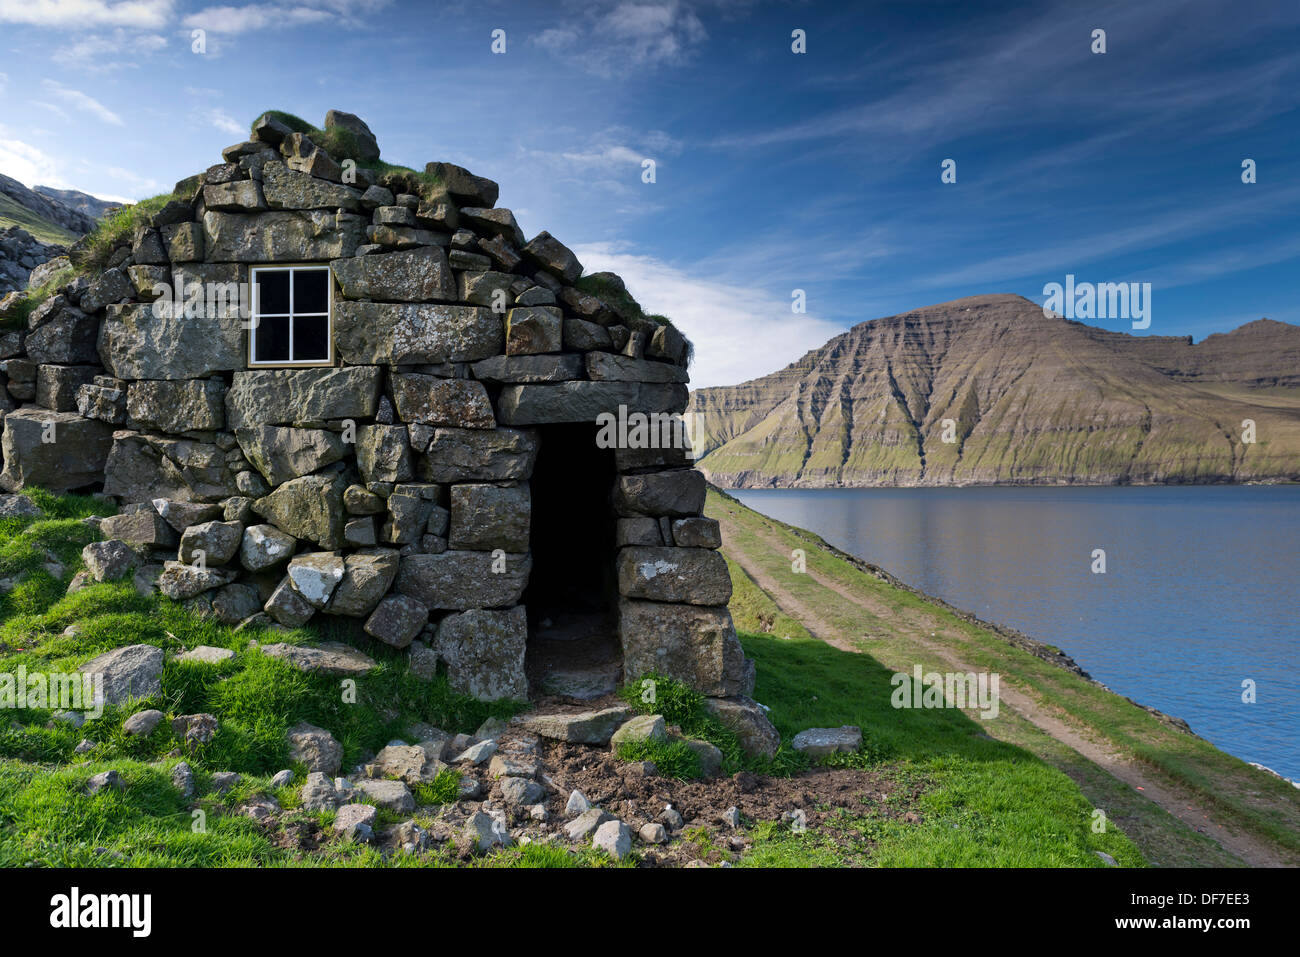 Altes Steinhaus auf einem Fjord, Norðoyar, Borðoys, Dänemark, Färöer Inseln Stockfoto